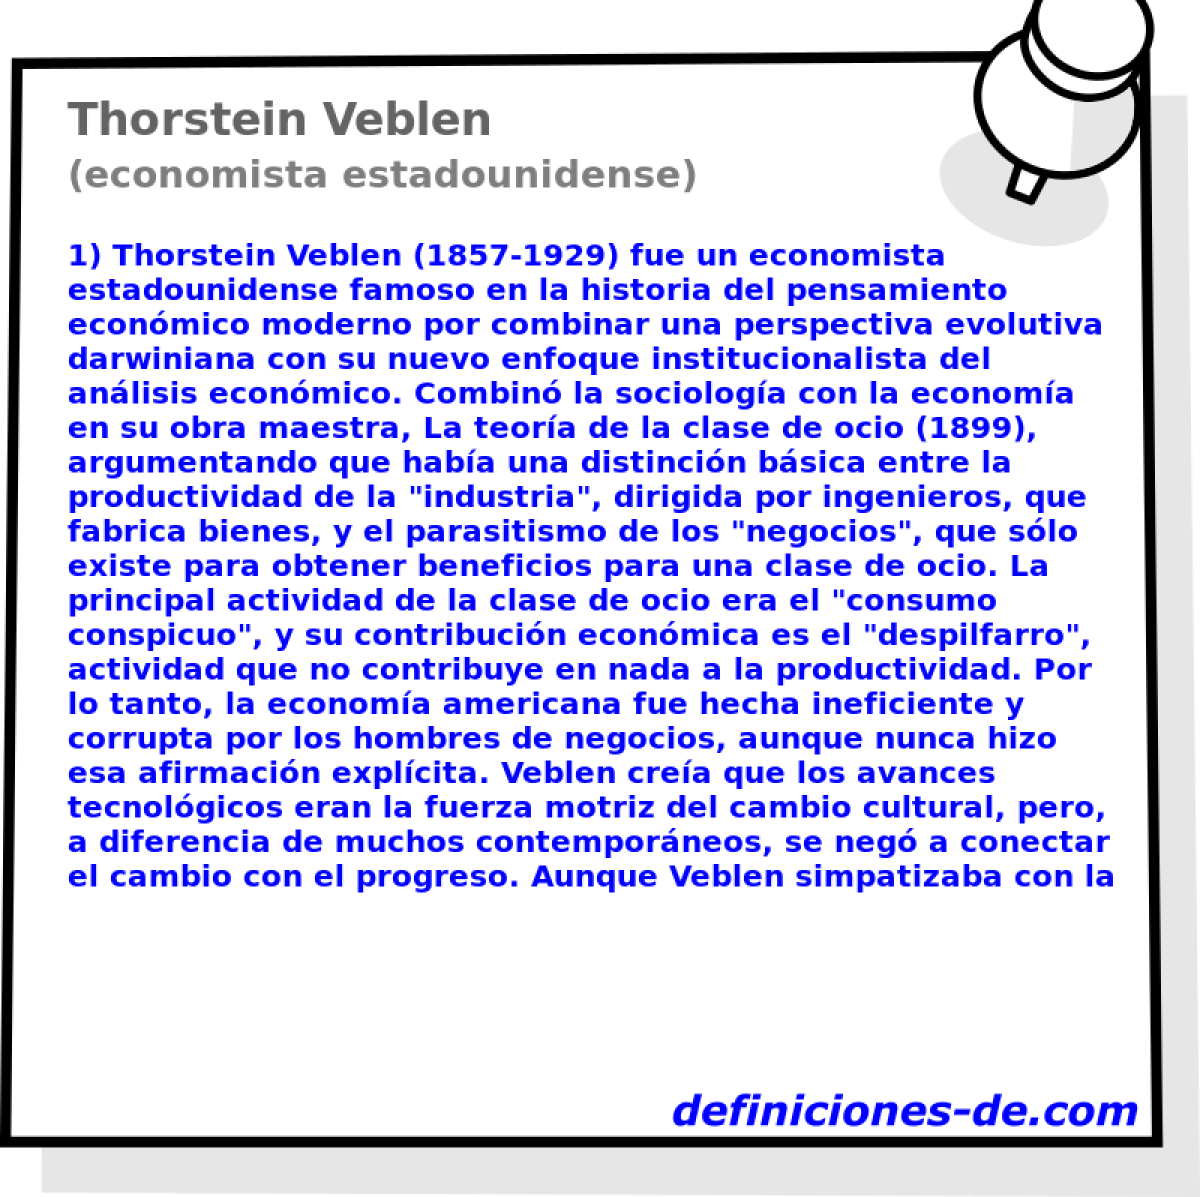 Thorstein Veblen (economista estadounidense)